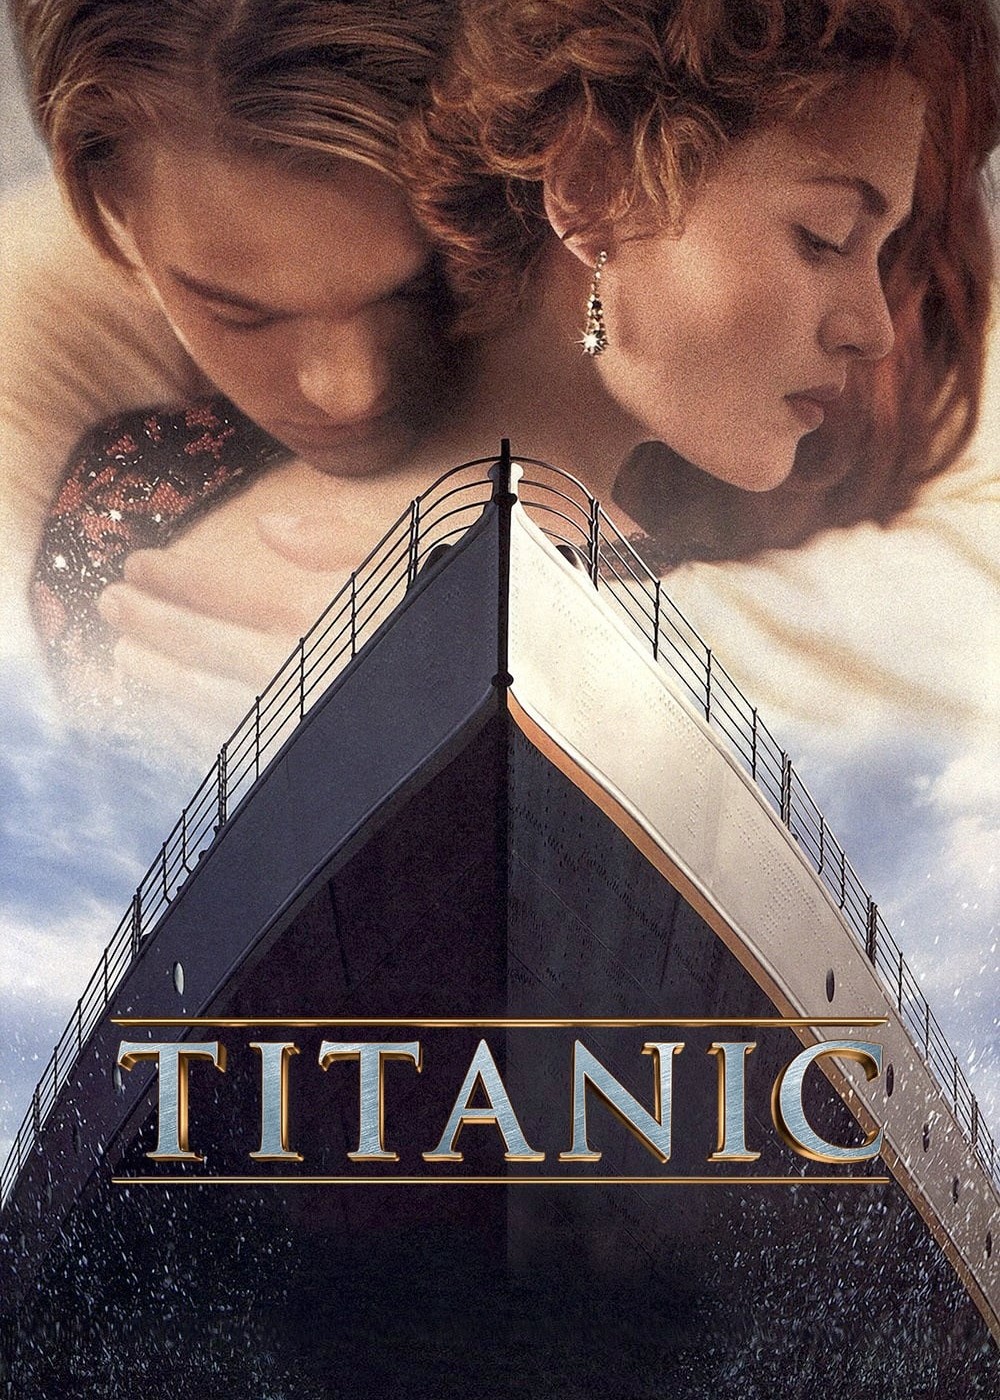 Titanic - Titanic